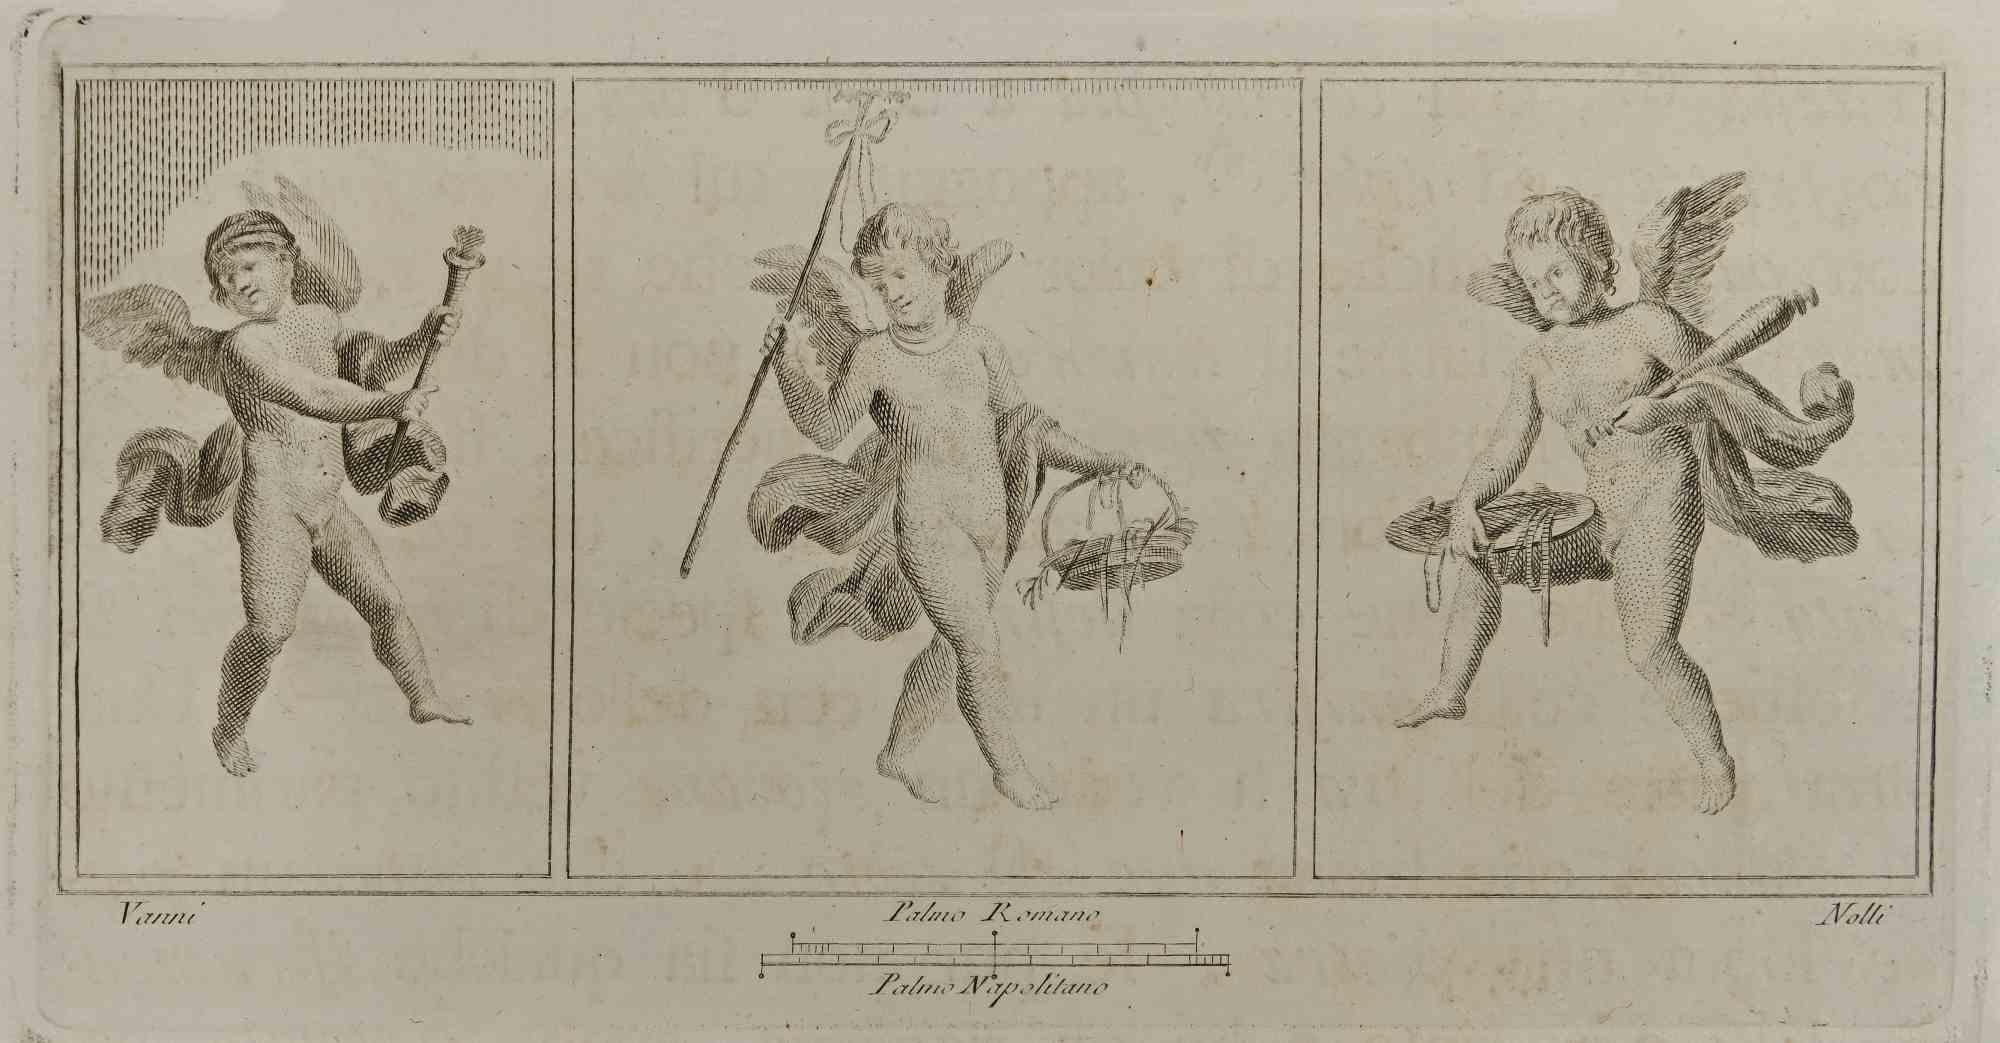 Cupidon en trois cadres des "Antiquités d'Herculanum" est une gravure sur papier réalisée par Carlo Nolli au 18ème siècle.

Signé sur la plaque.

Bonnes conditions.

La gravure appartient à la suite d'estampes "Antiquités d'Herculanum exposées"